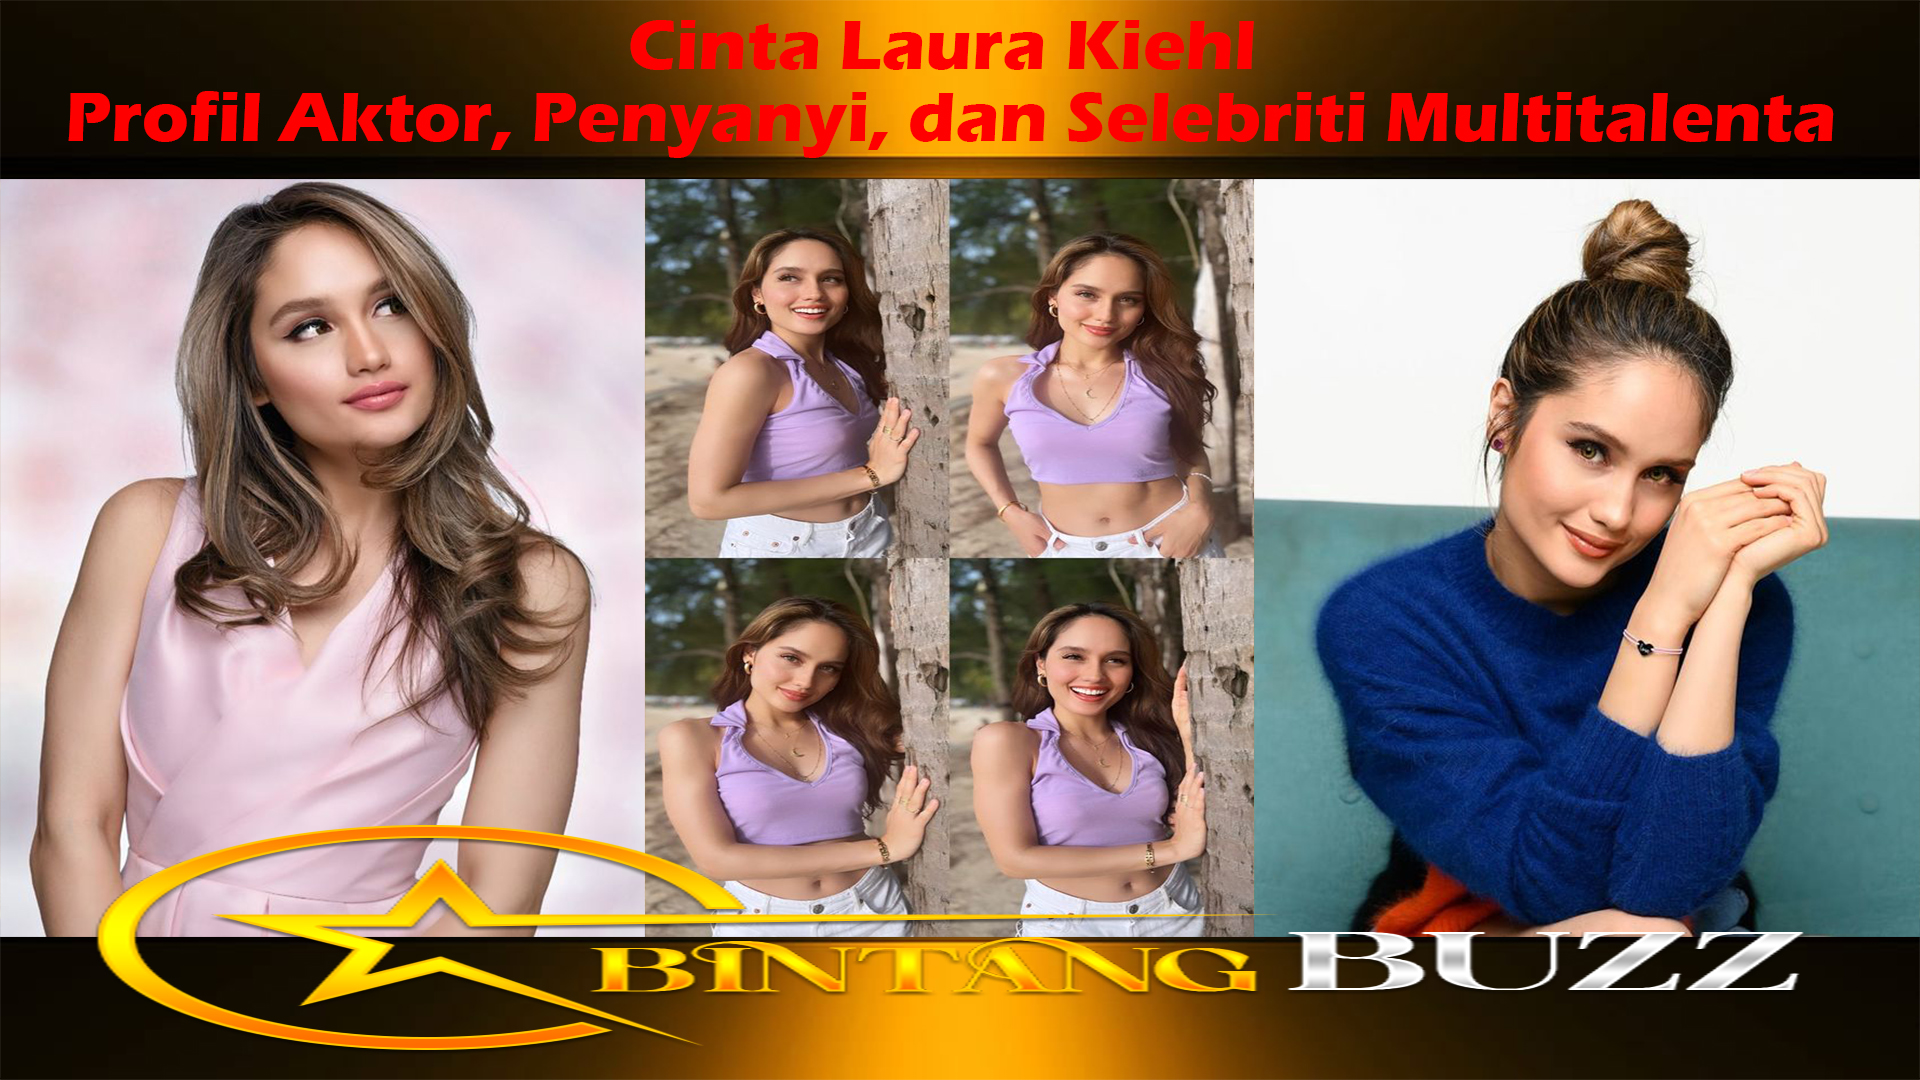 Cinta Laura Kiehl: Profil Aktor, Penyanyi, dan Selebriti Multitalenta